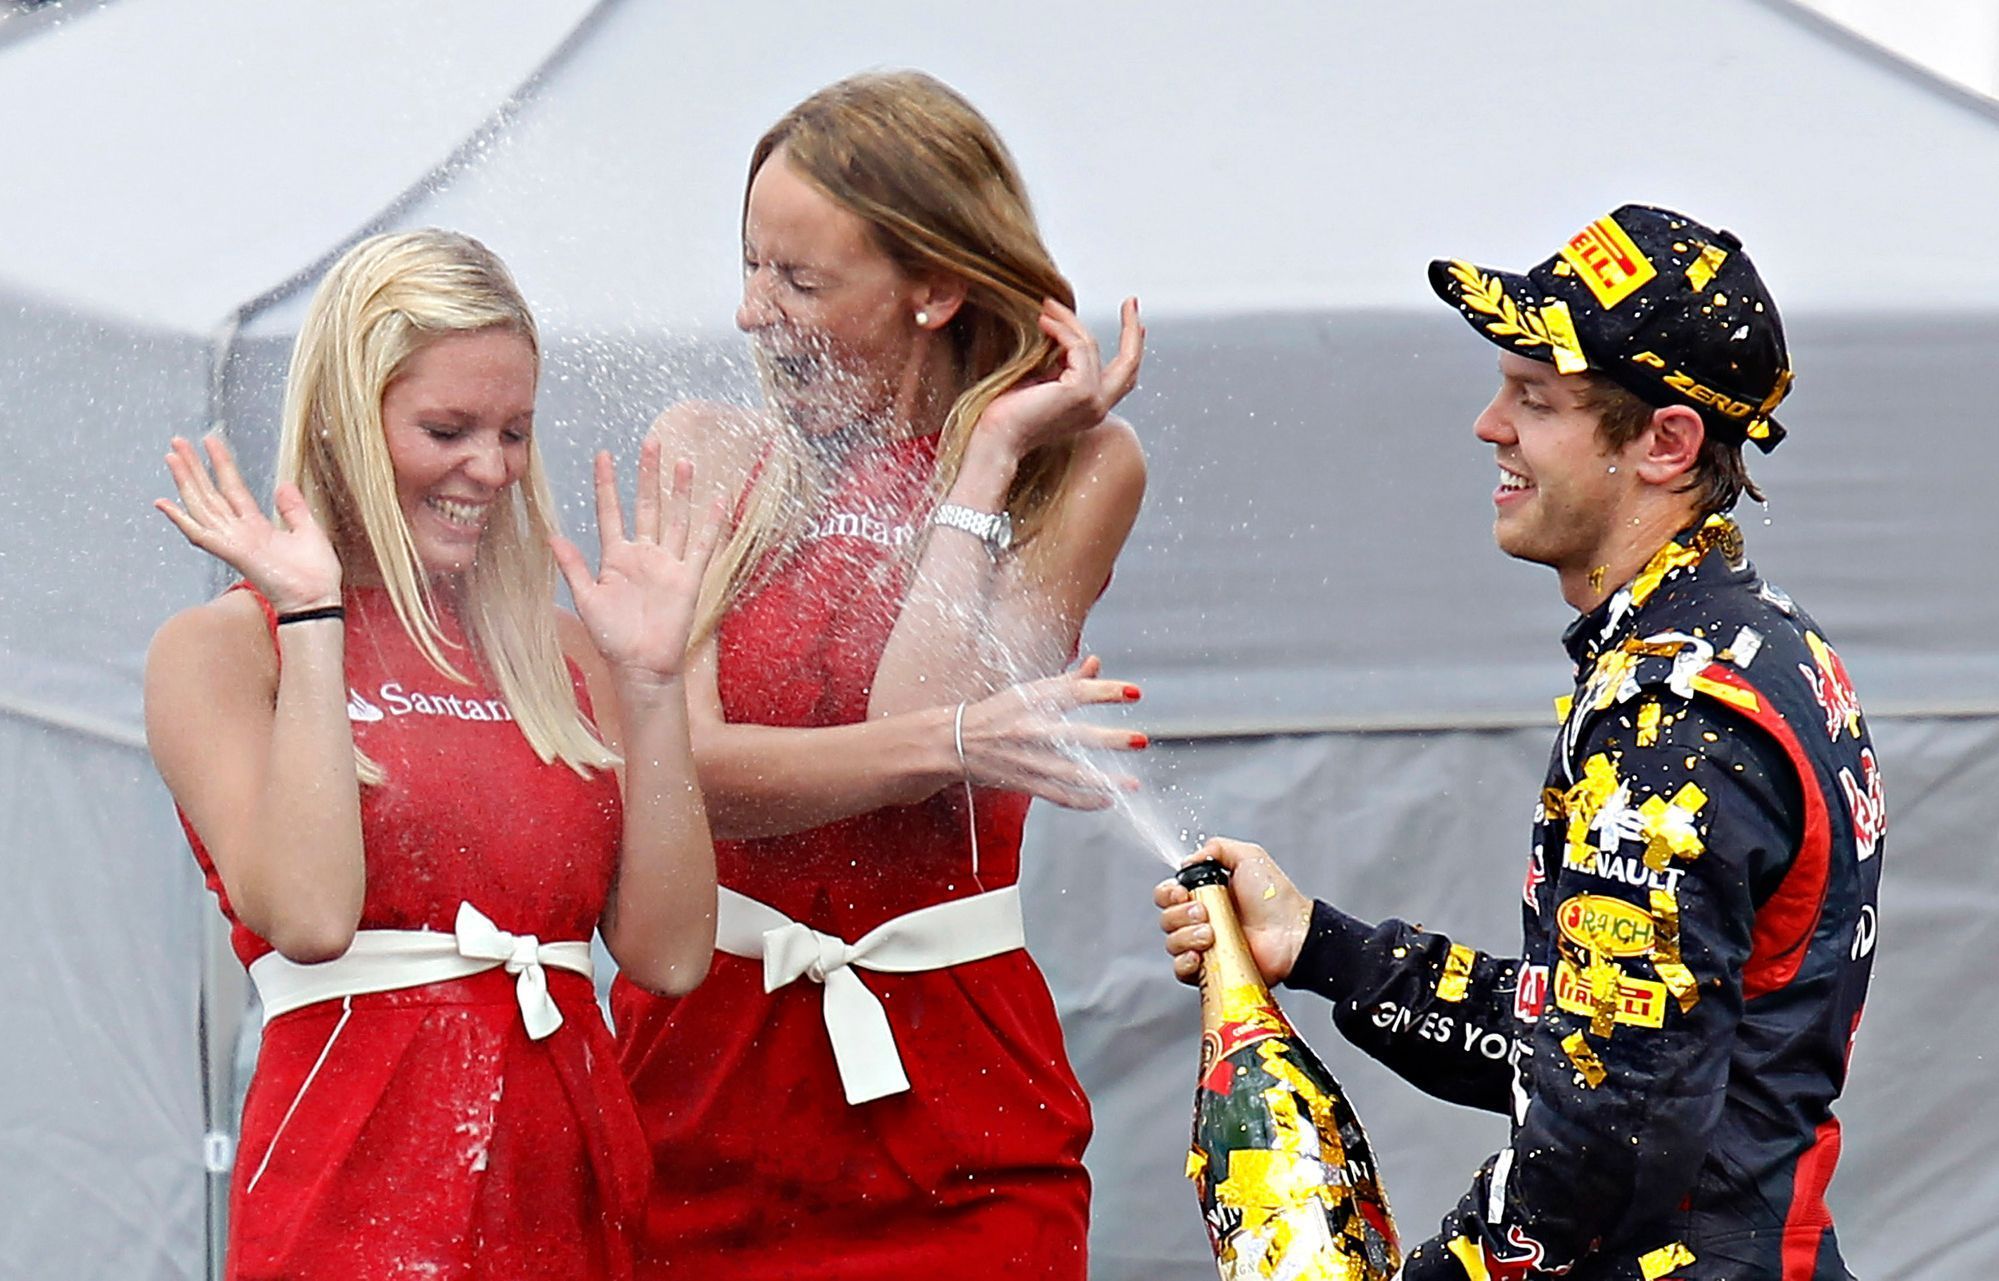 VC Německa: Sebastian Vettel kropí hostesky šampaňským